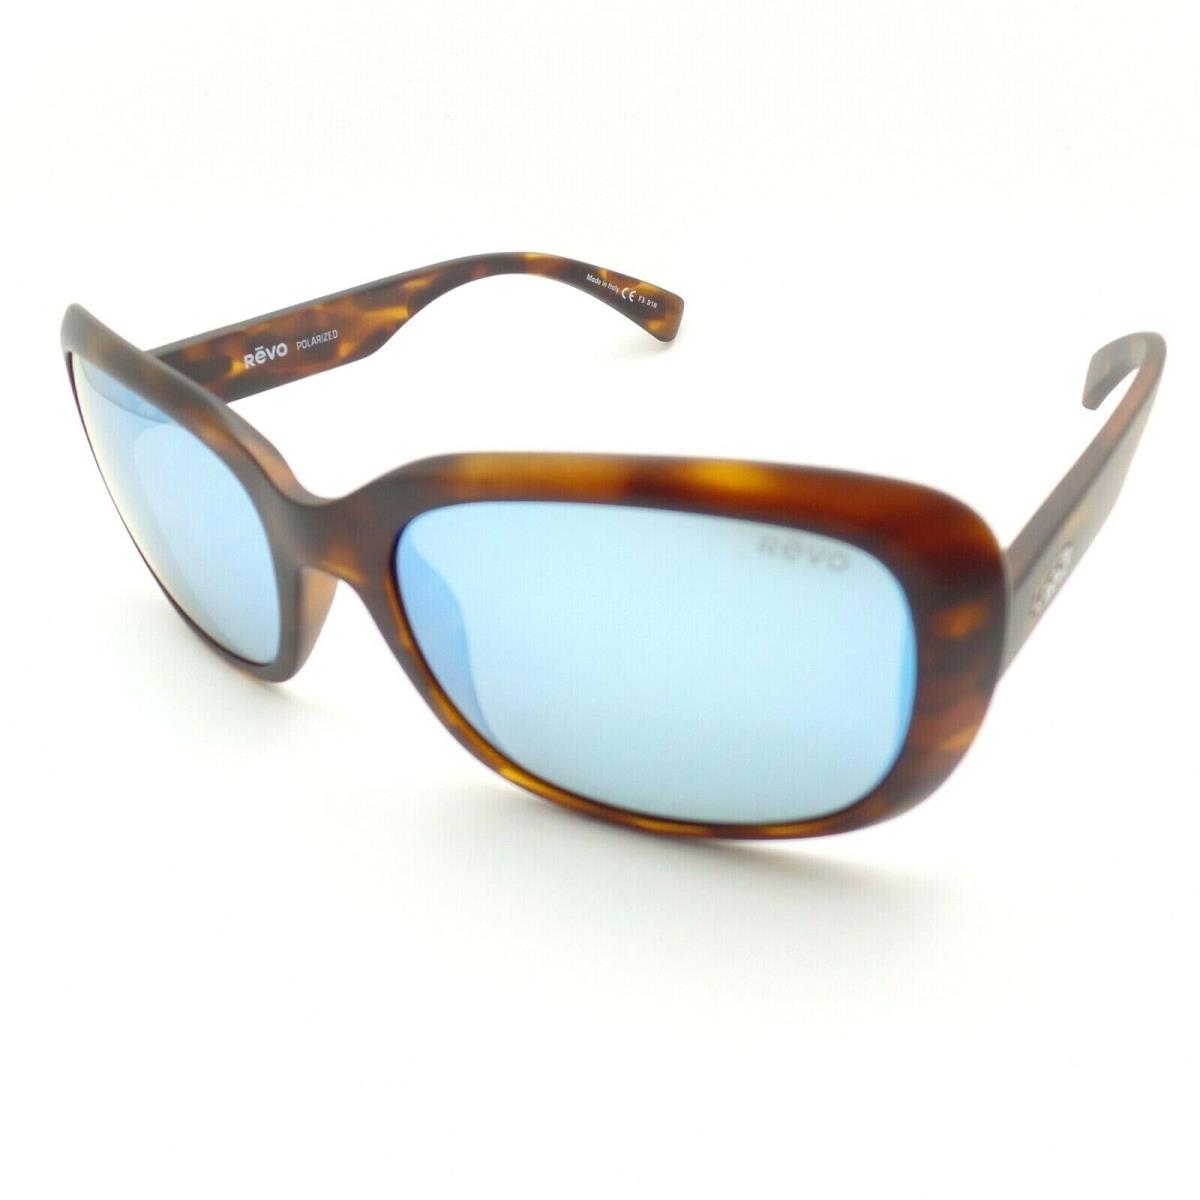 Revo sunglasses  - Matte Tortoise Frame, Blue Water Lens